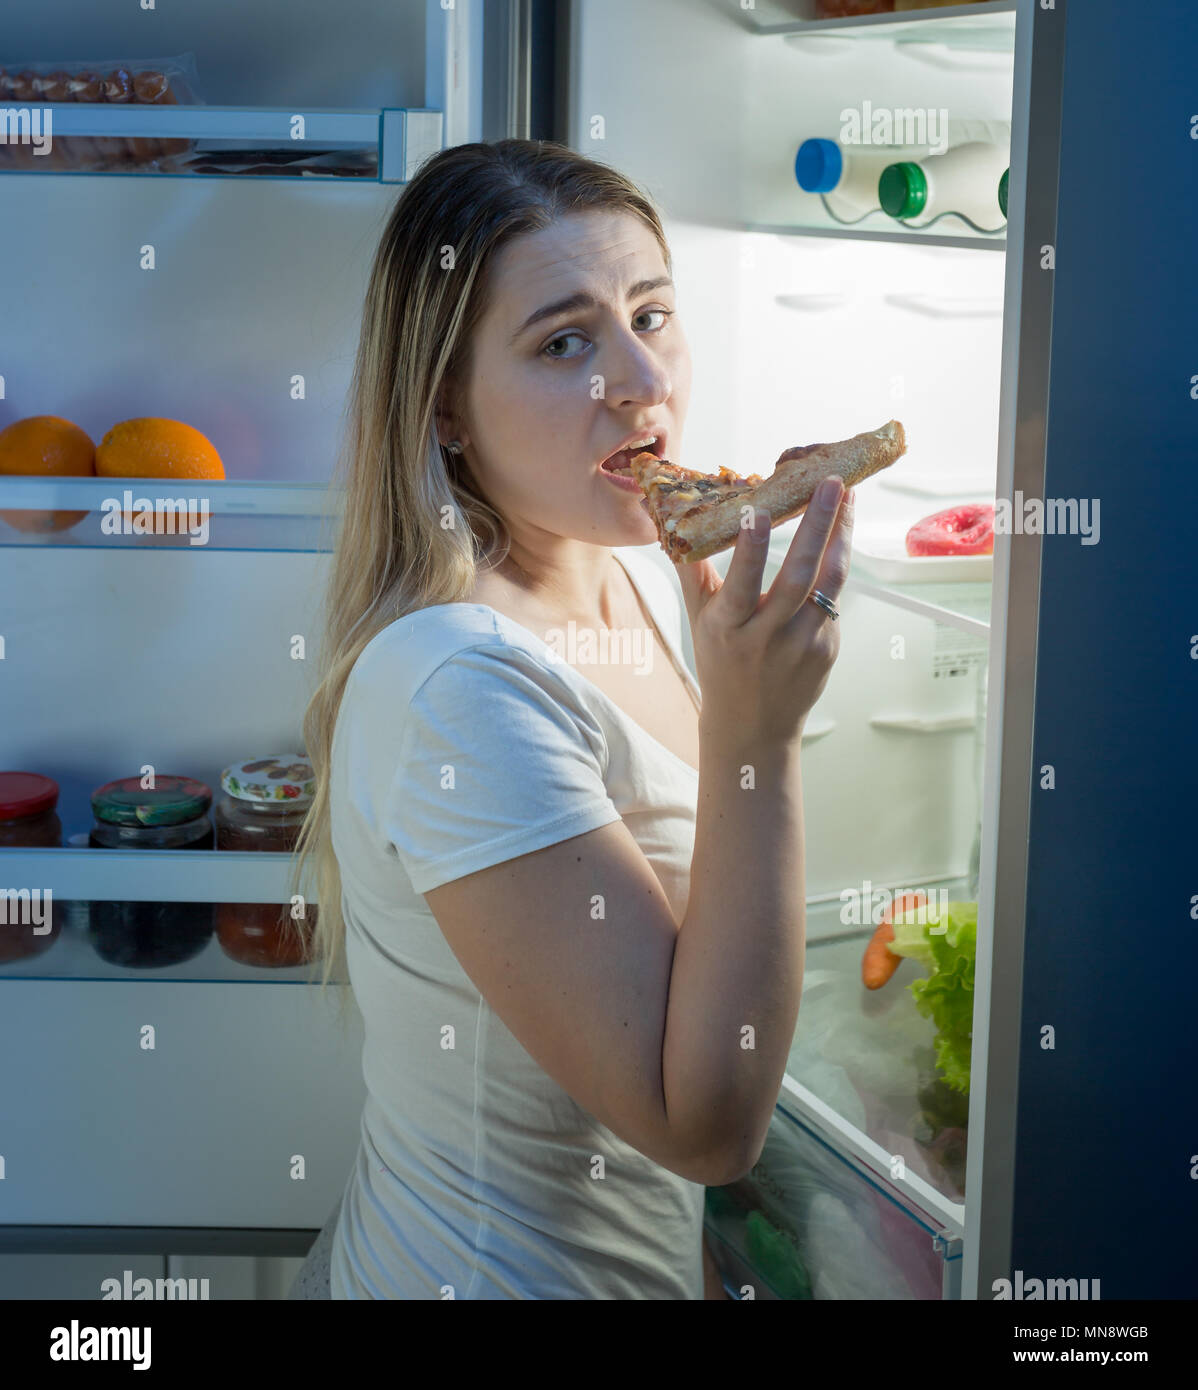 Jeune femme à la coupe faim nuit debout sur cuisine et manger des pizzas. Concept de la mauvaise alimentation et de la nutrition Banque D'Images